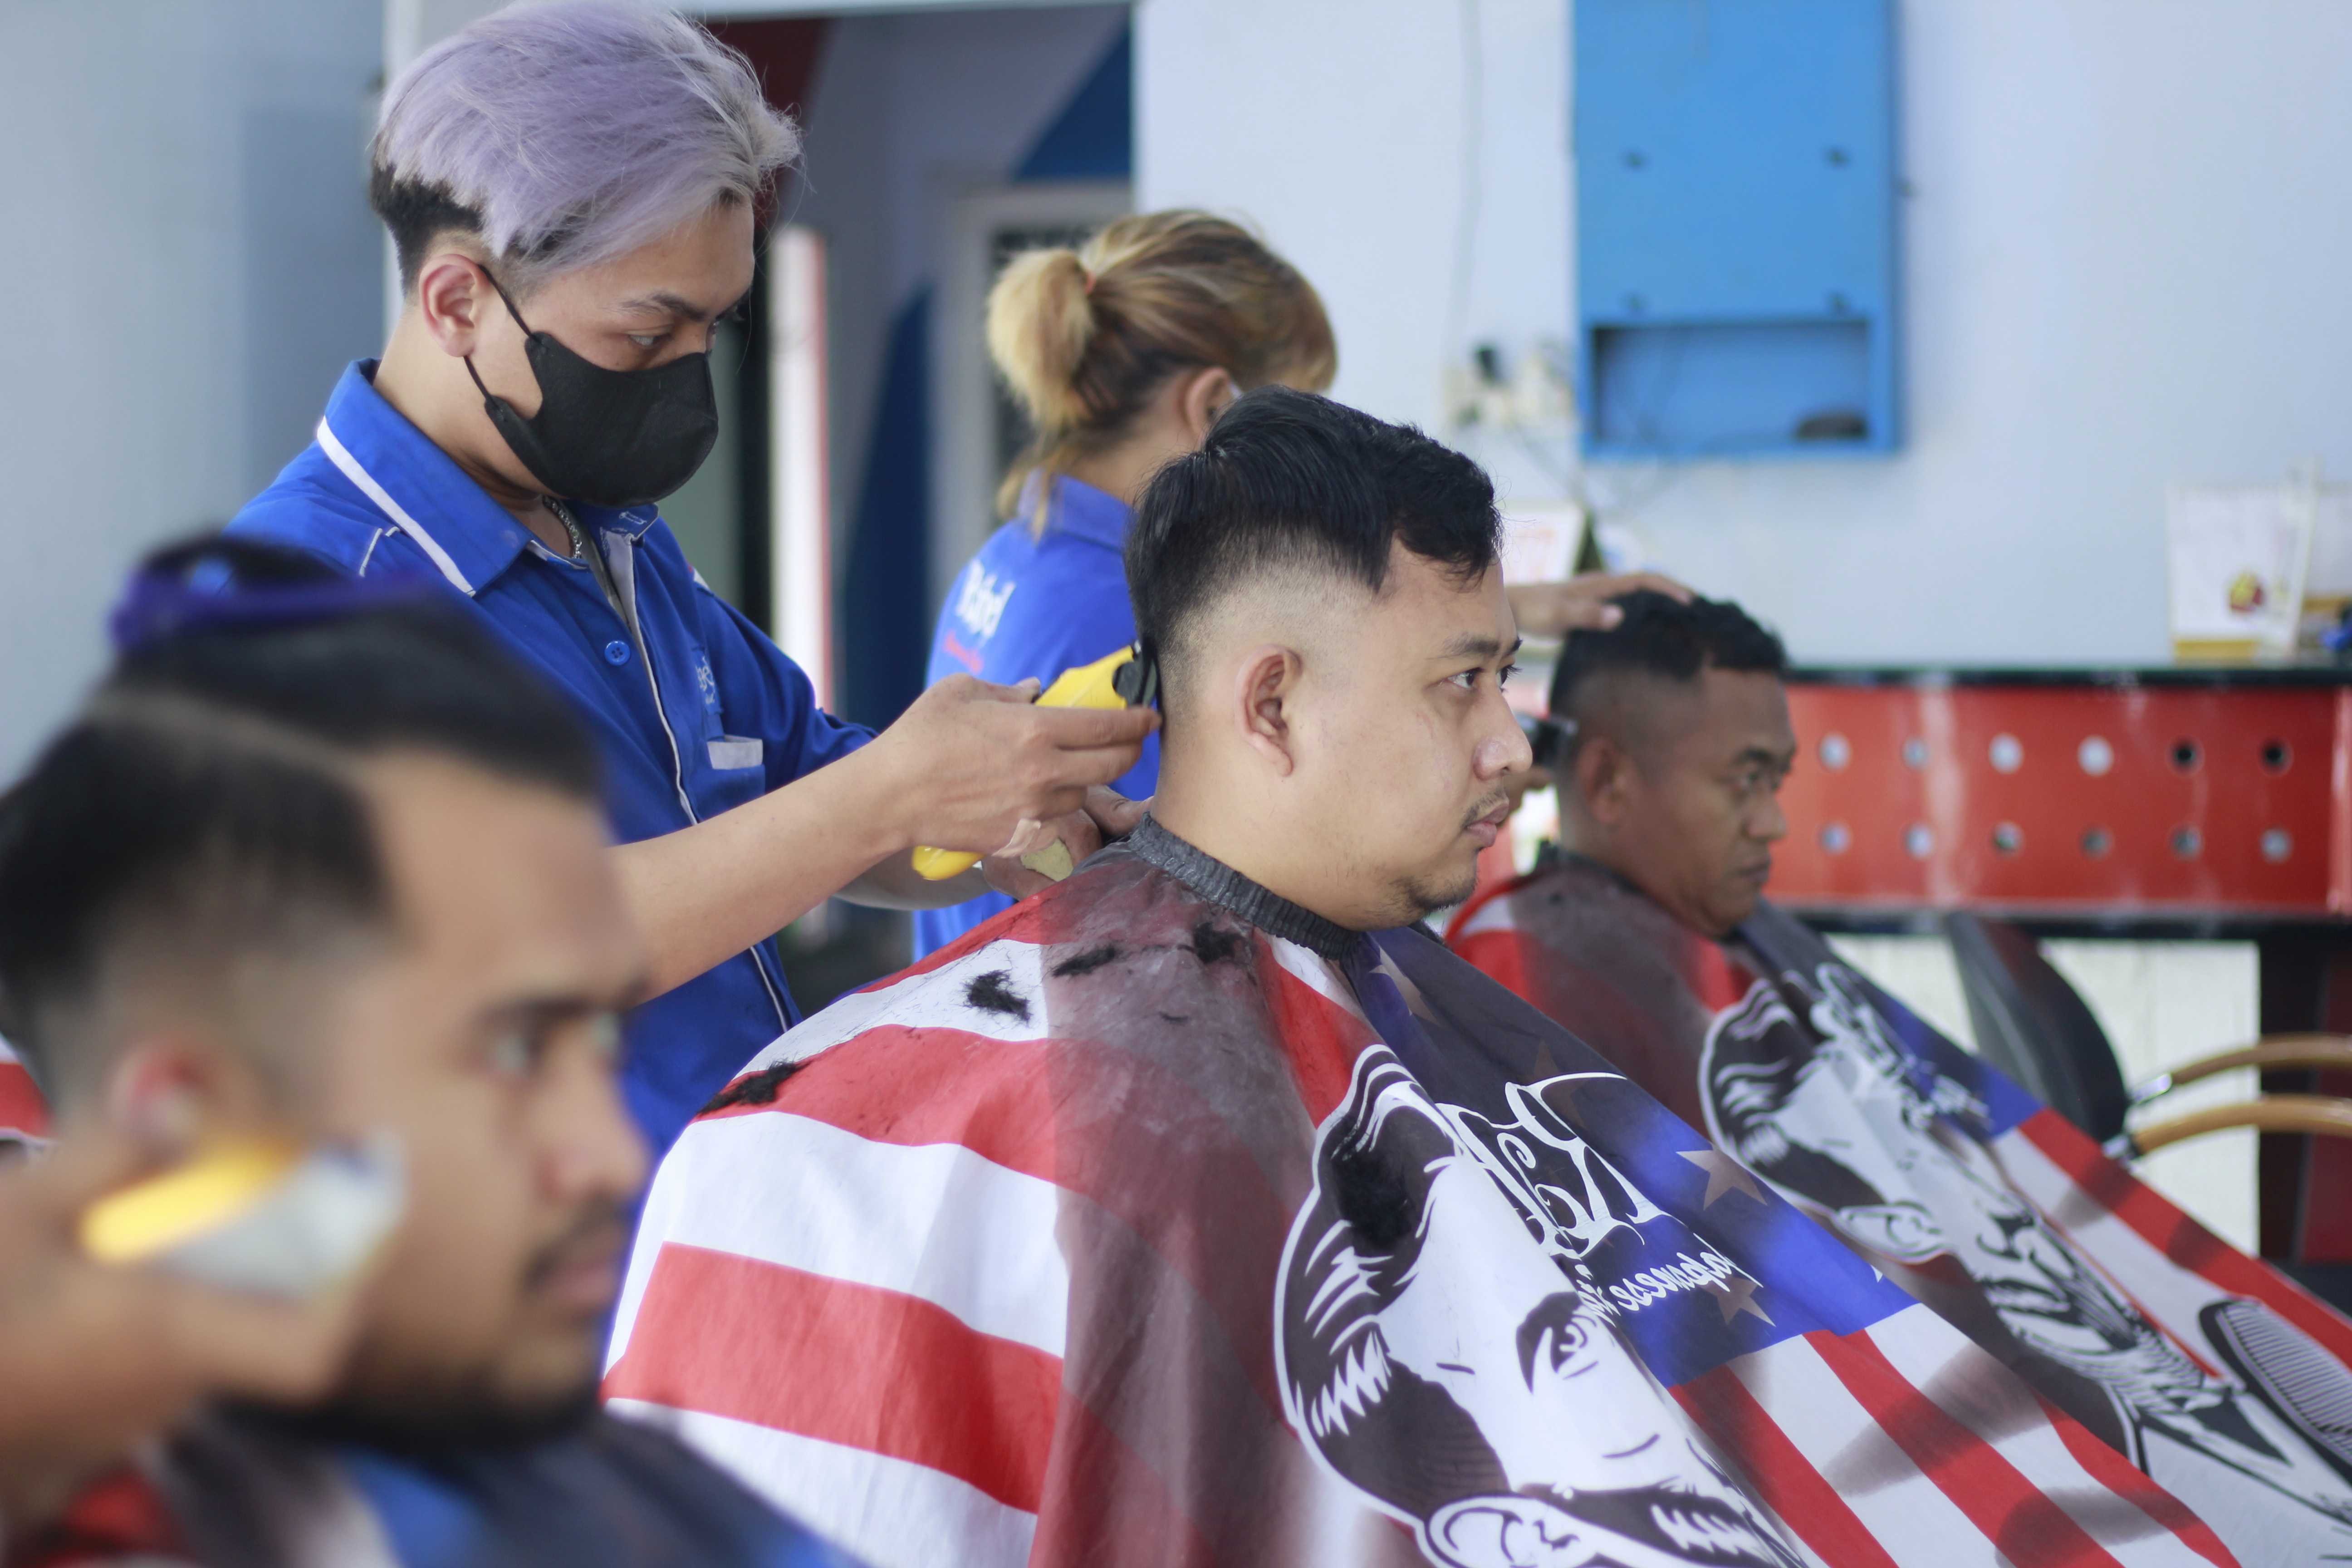 Lokasi Tempat Cukur Rambut Di Kelurahan Tlogowaru Profesional